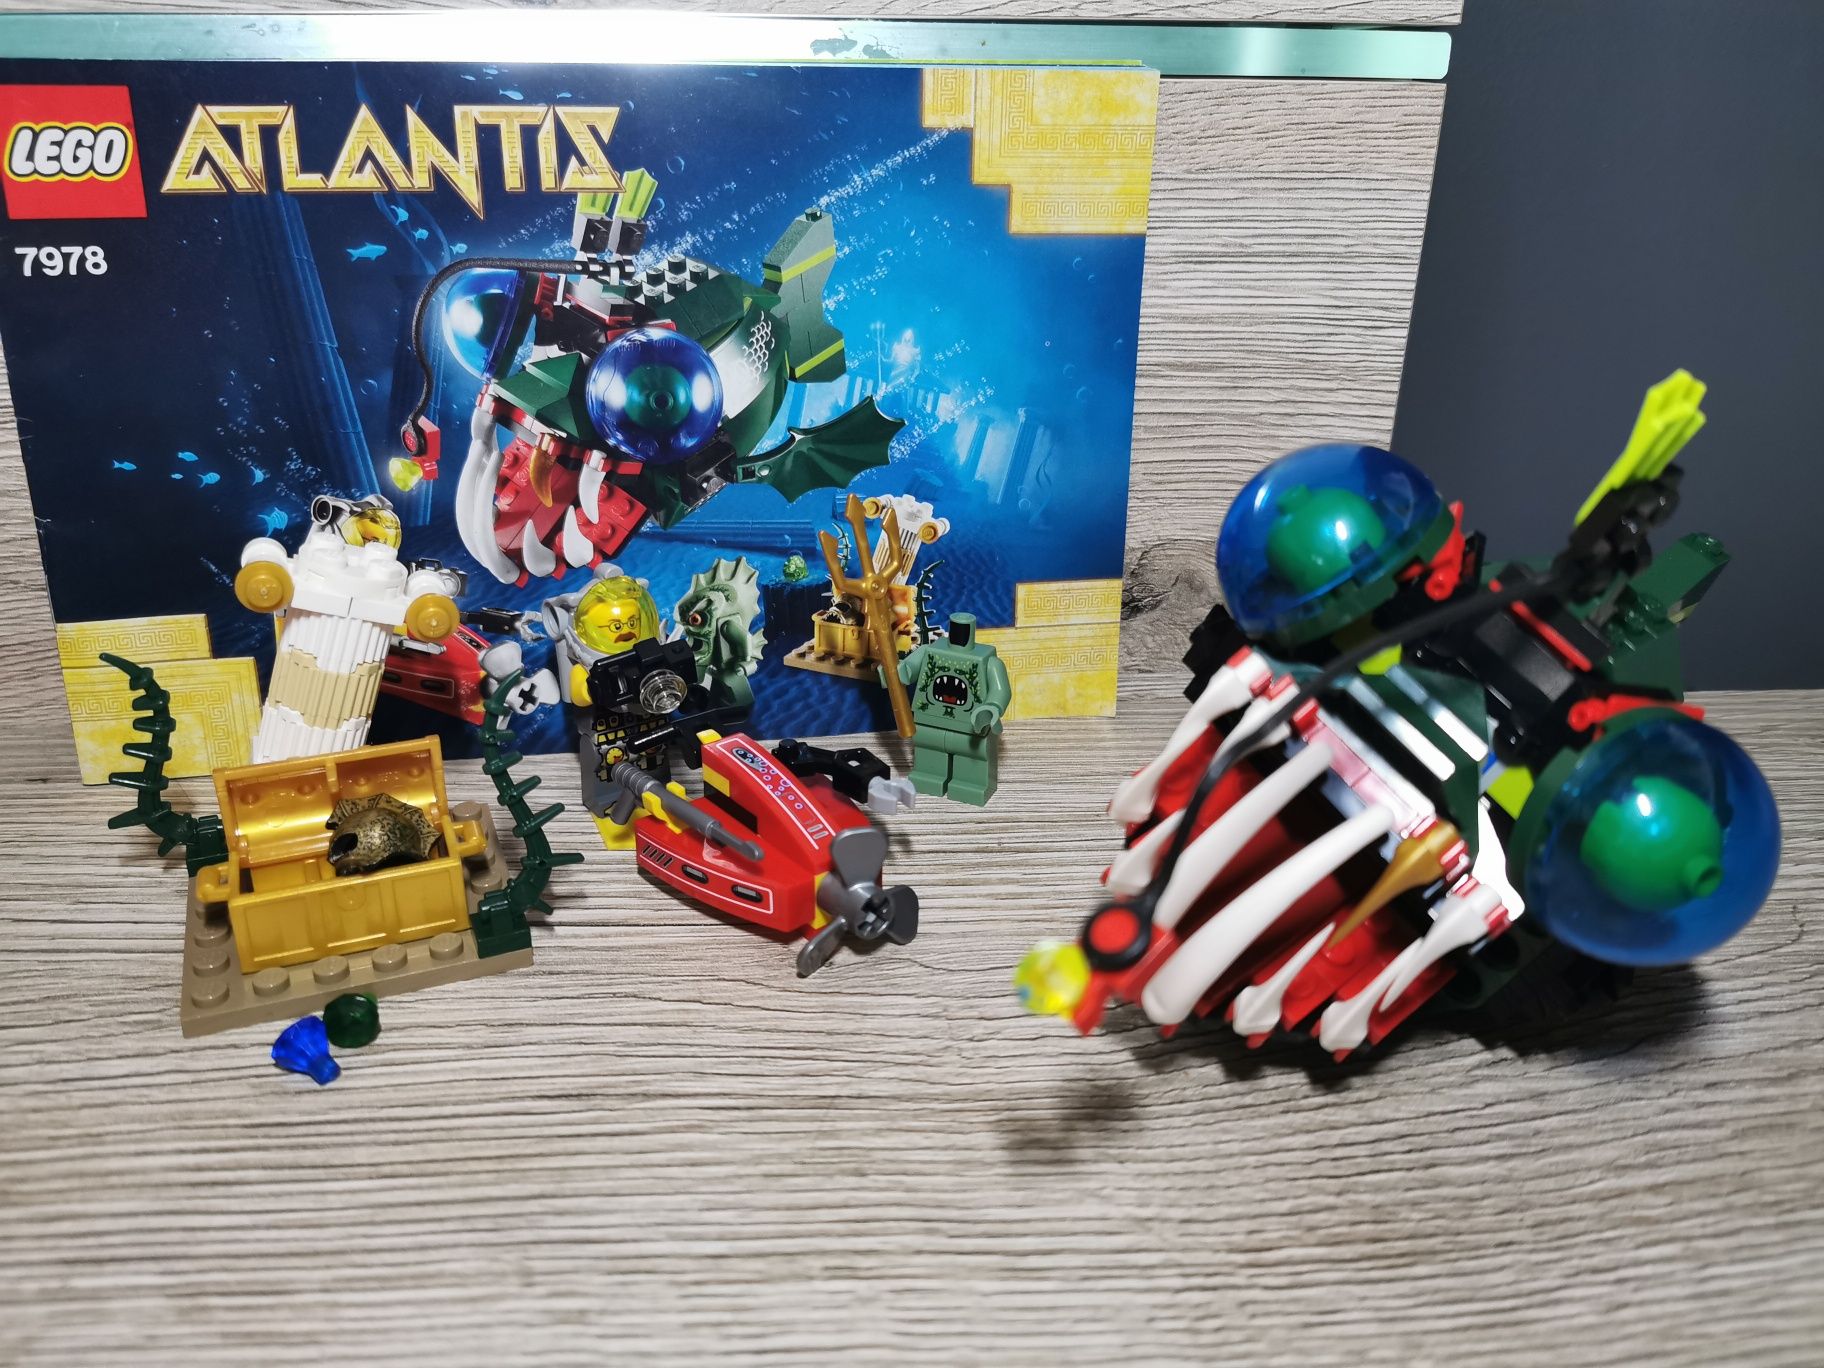 Lego Atlantis 7978 Atak ryby głębinowej